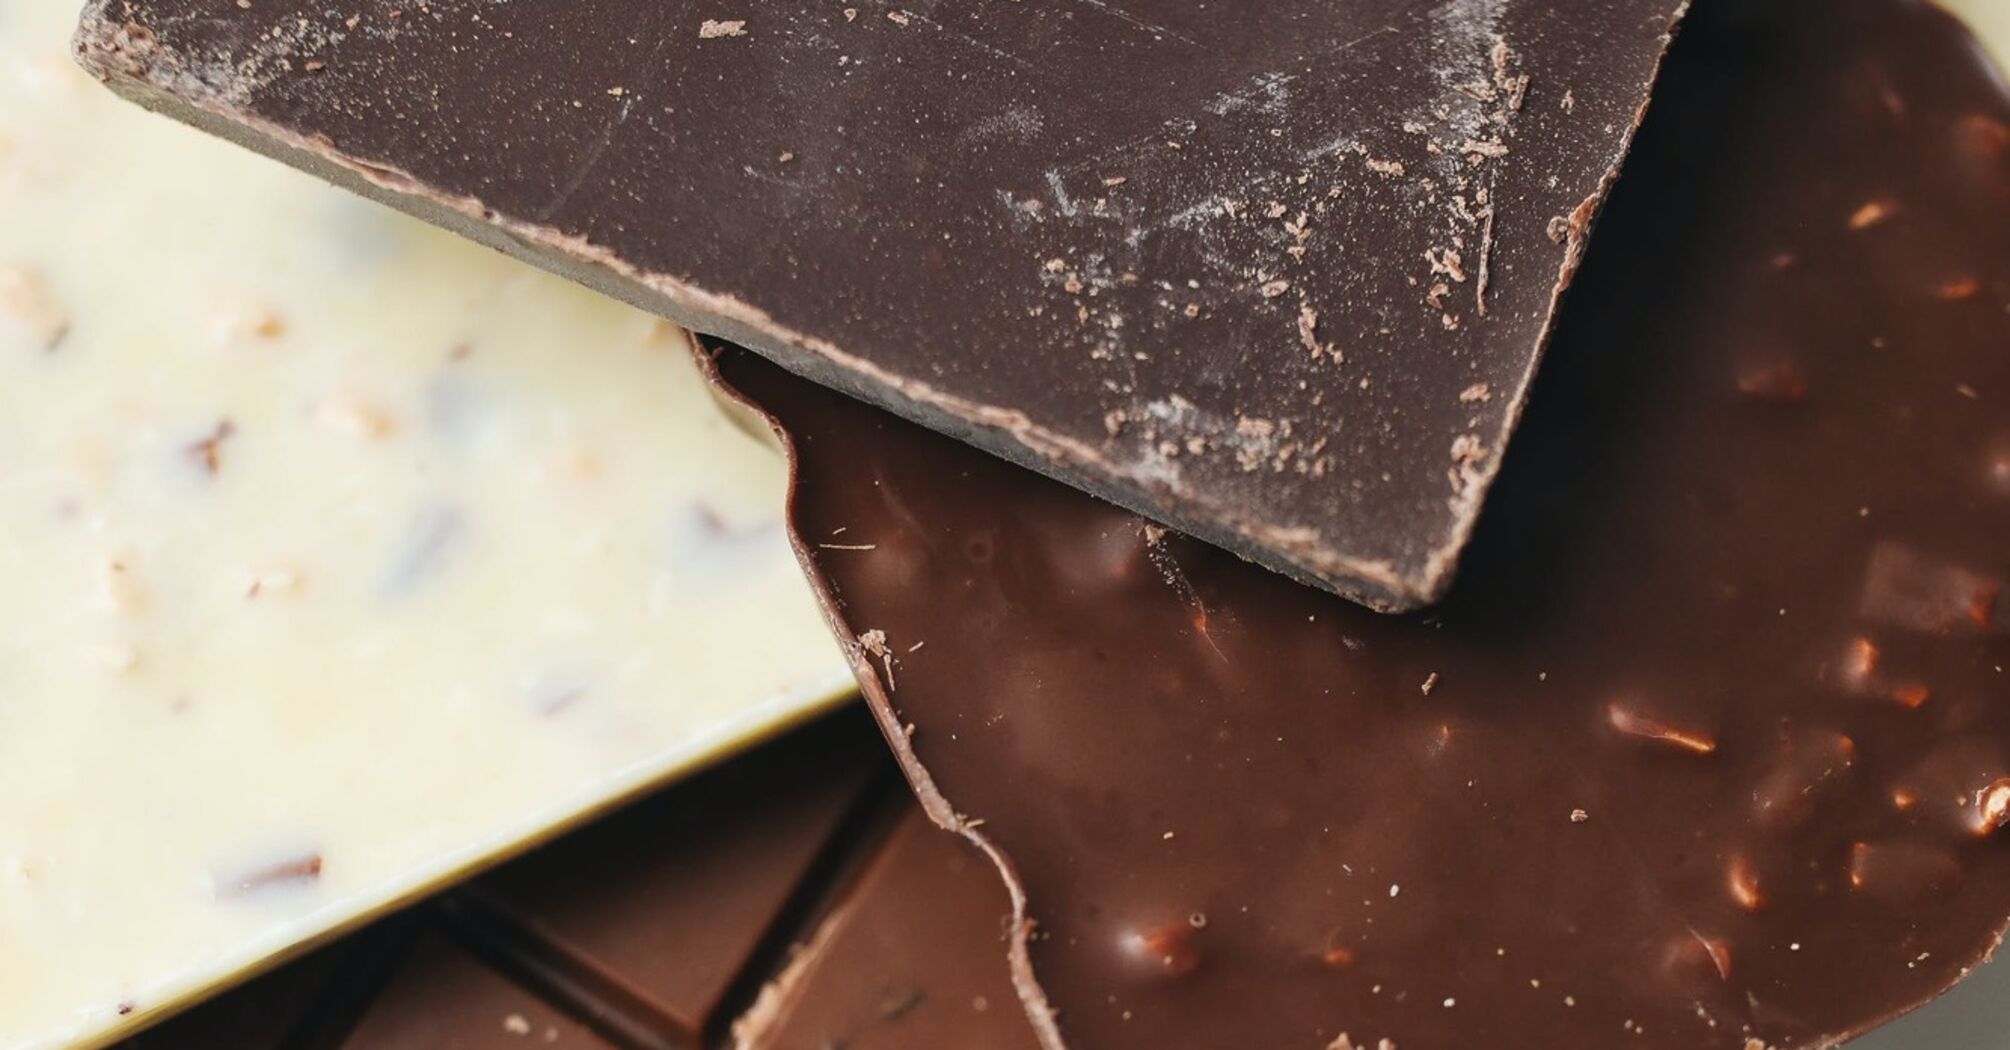 Як перевірити натуральність шоколаду: 5 дієвих порад